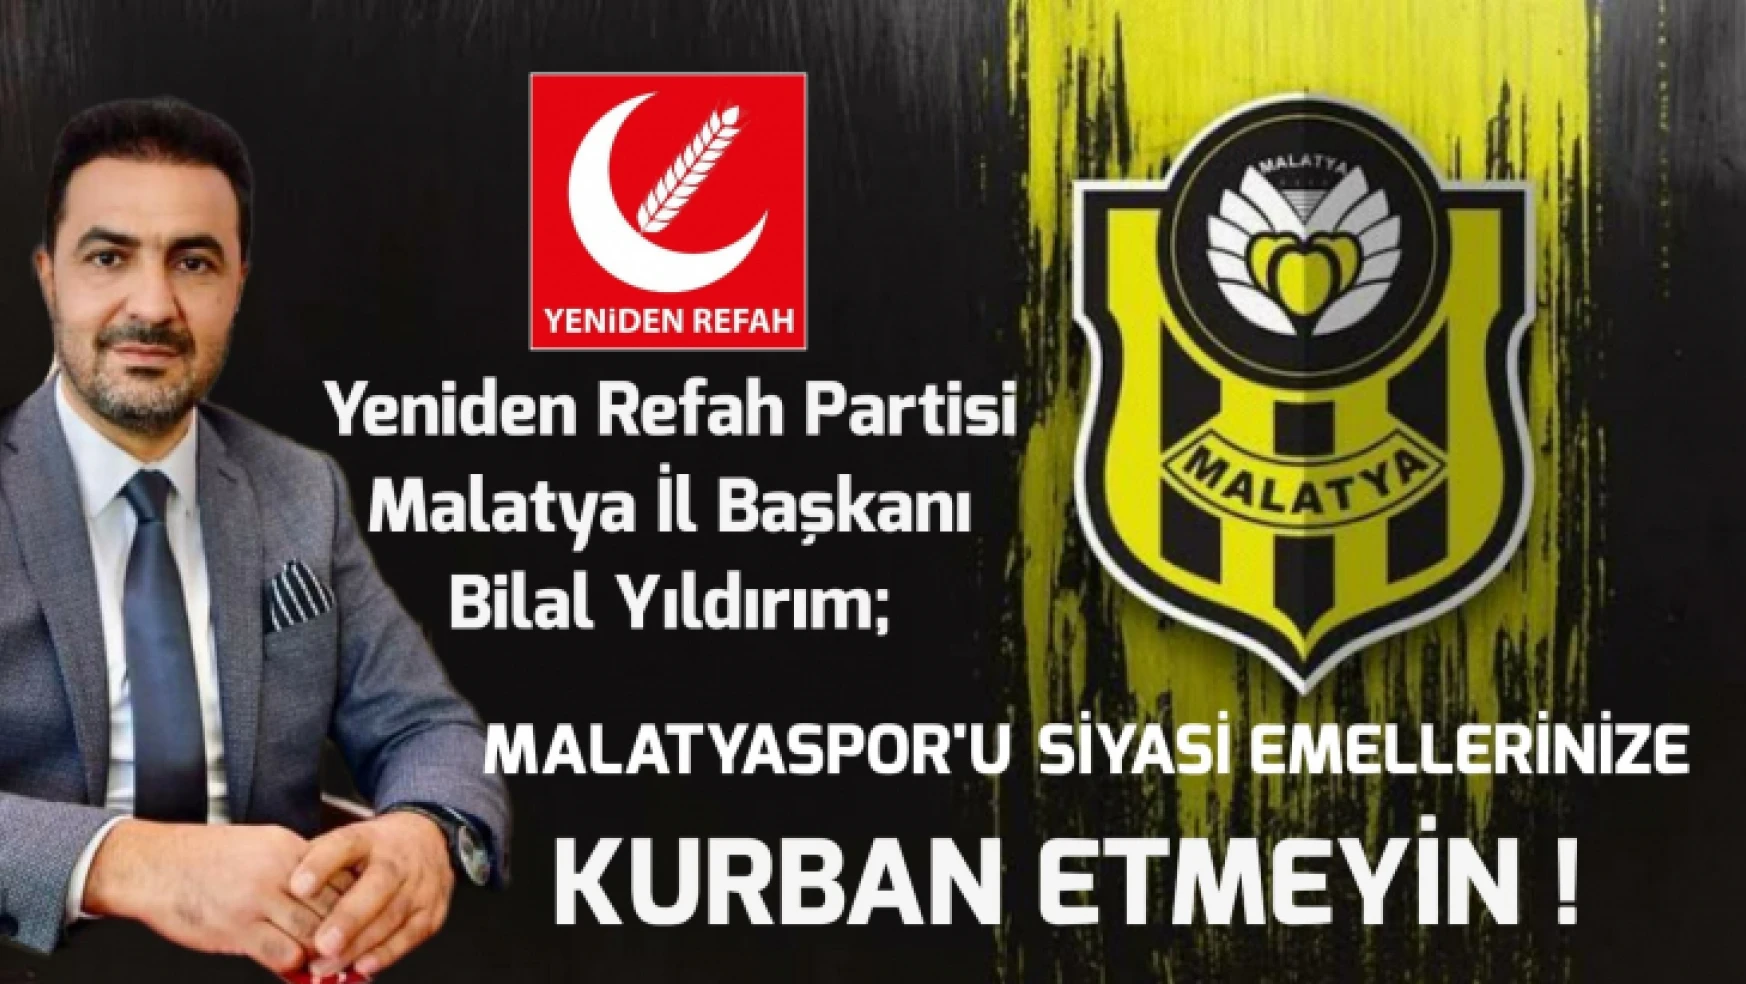 'Malatyaspor'u siyasi emellerinize kurban etmeyin'